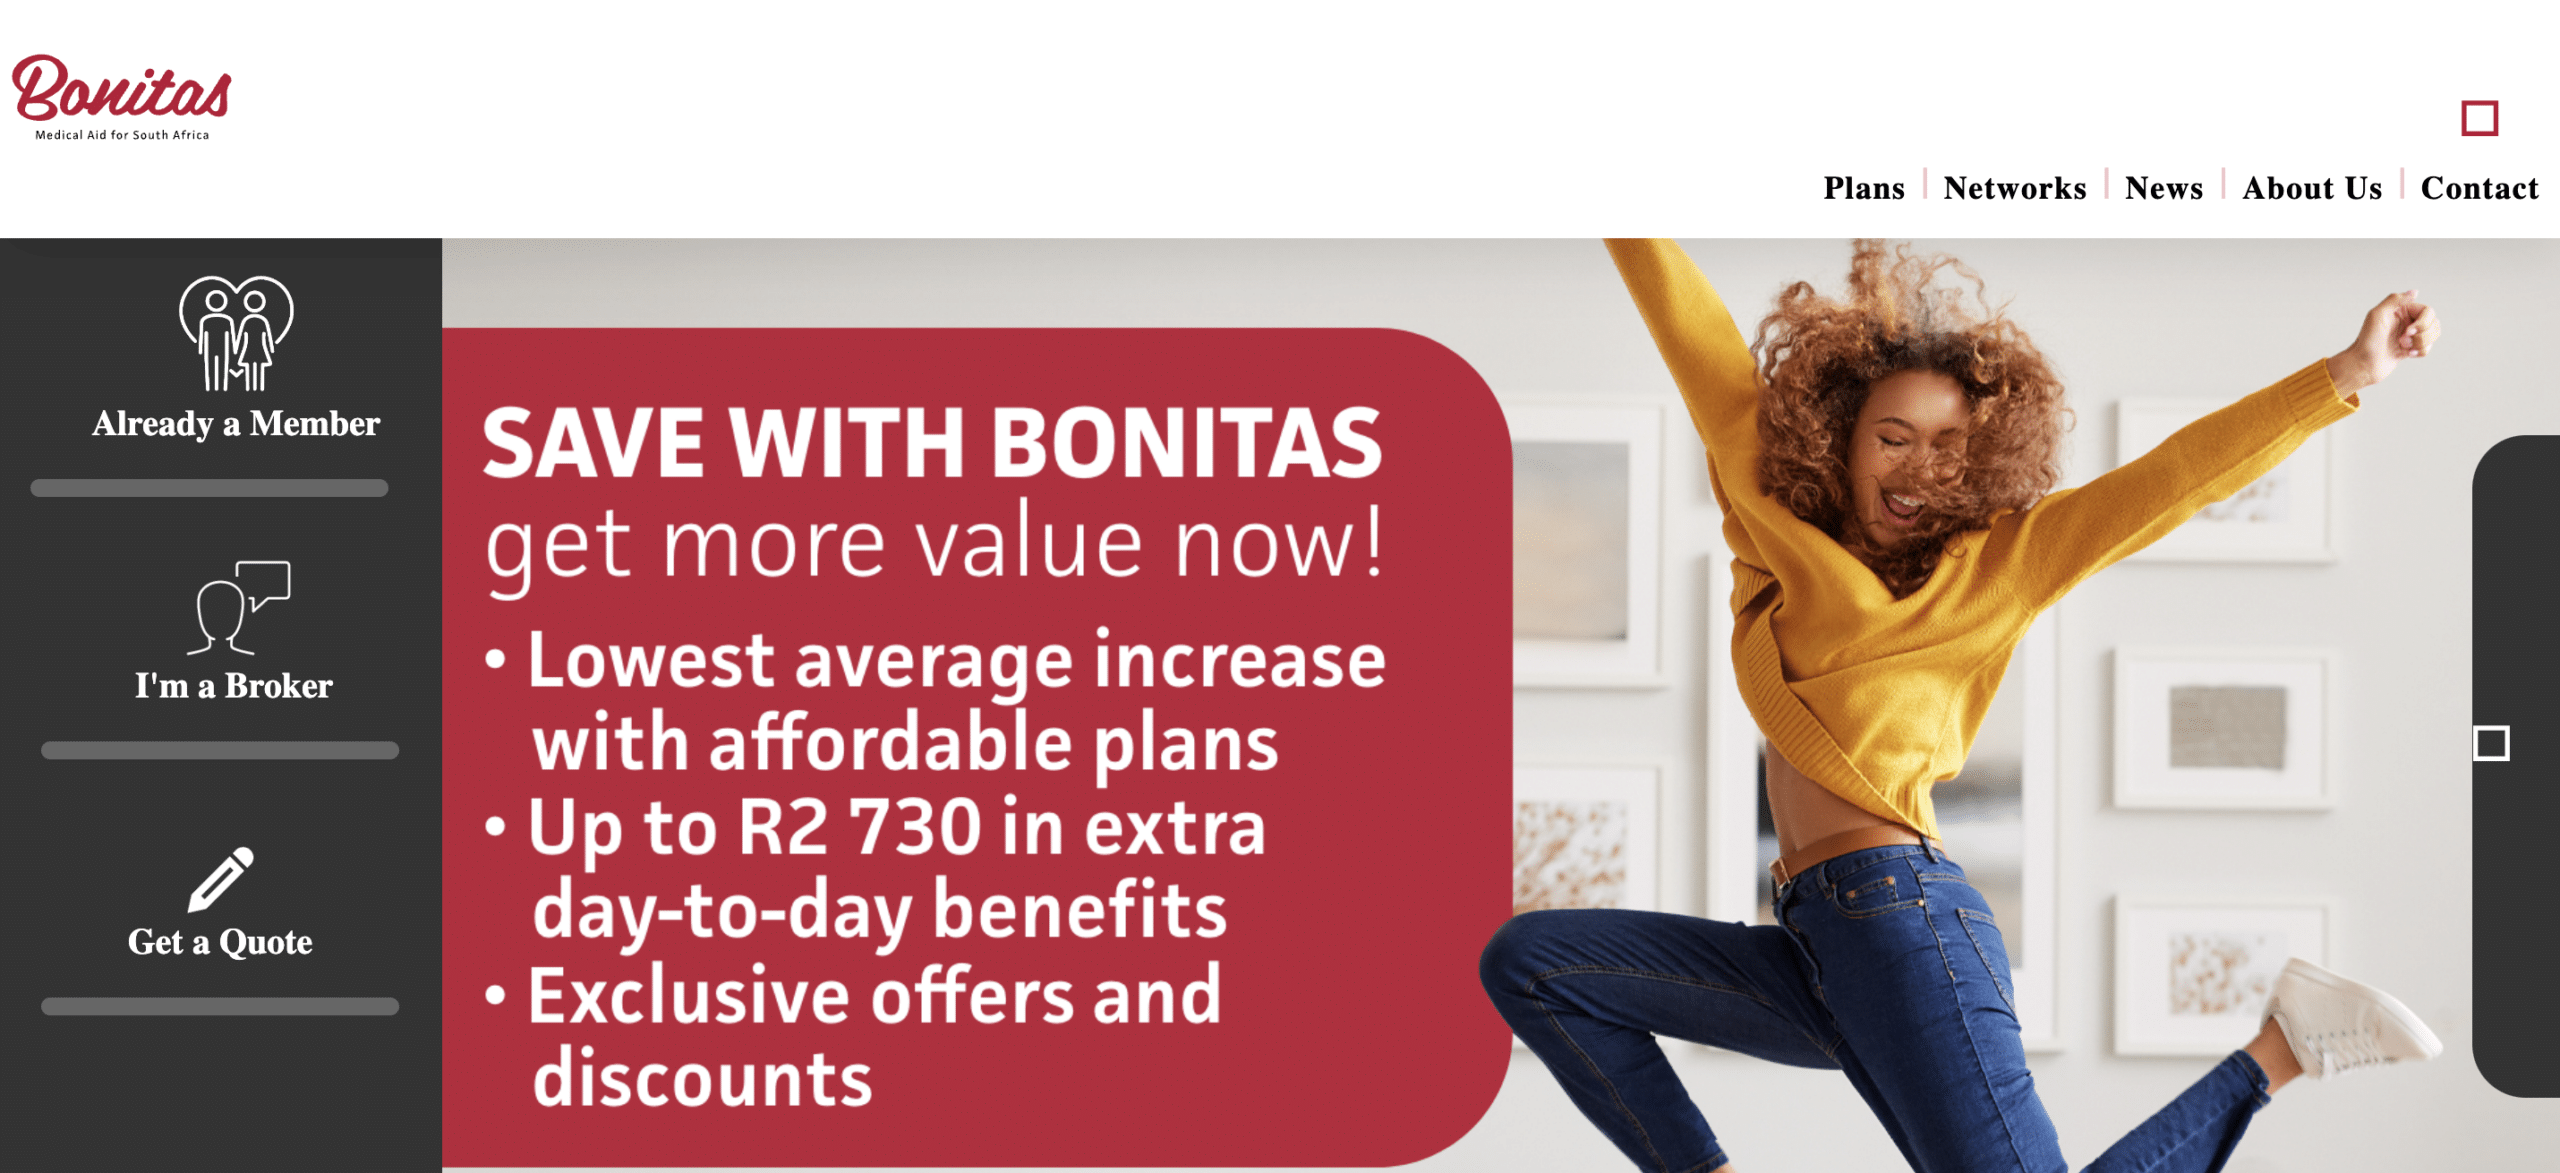 Who is Bonitas?